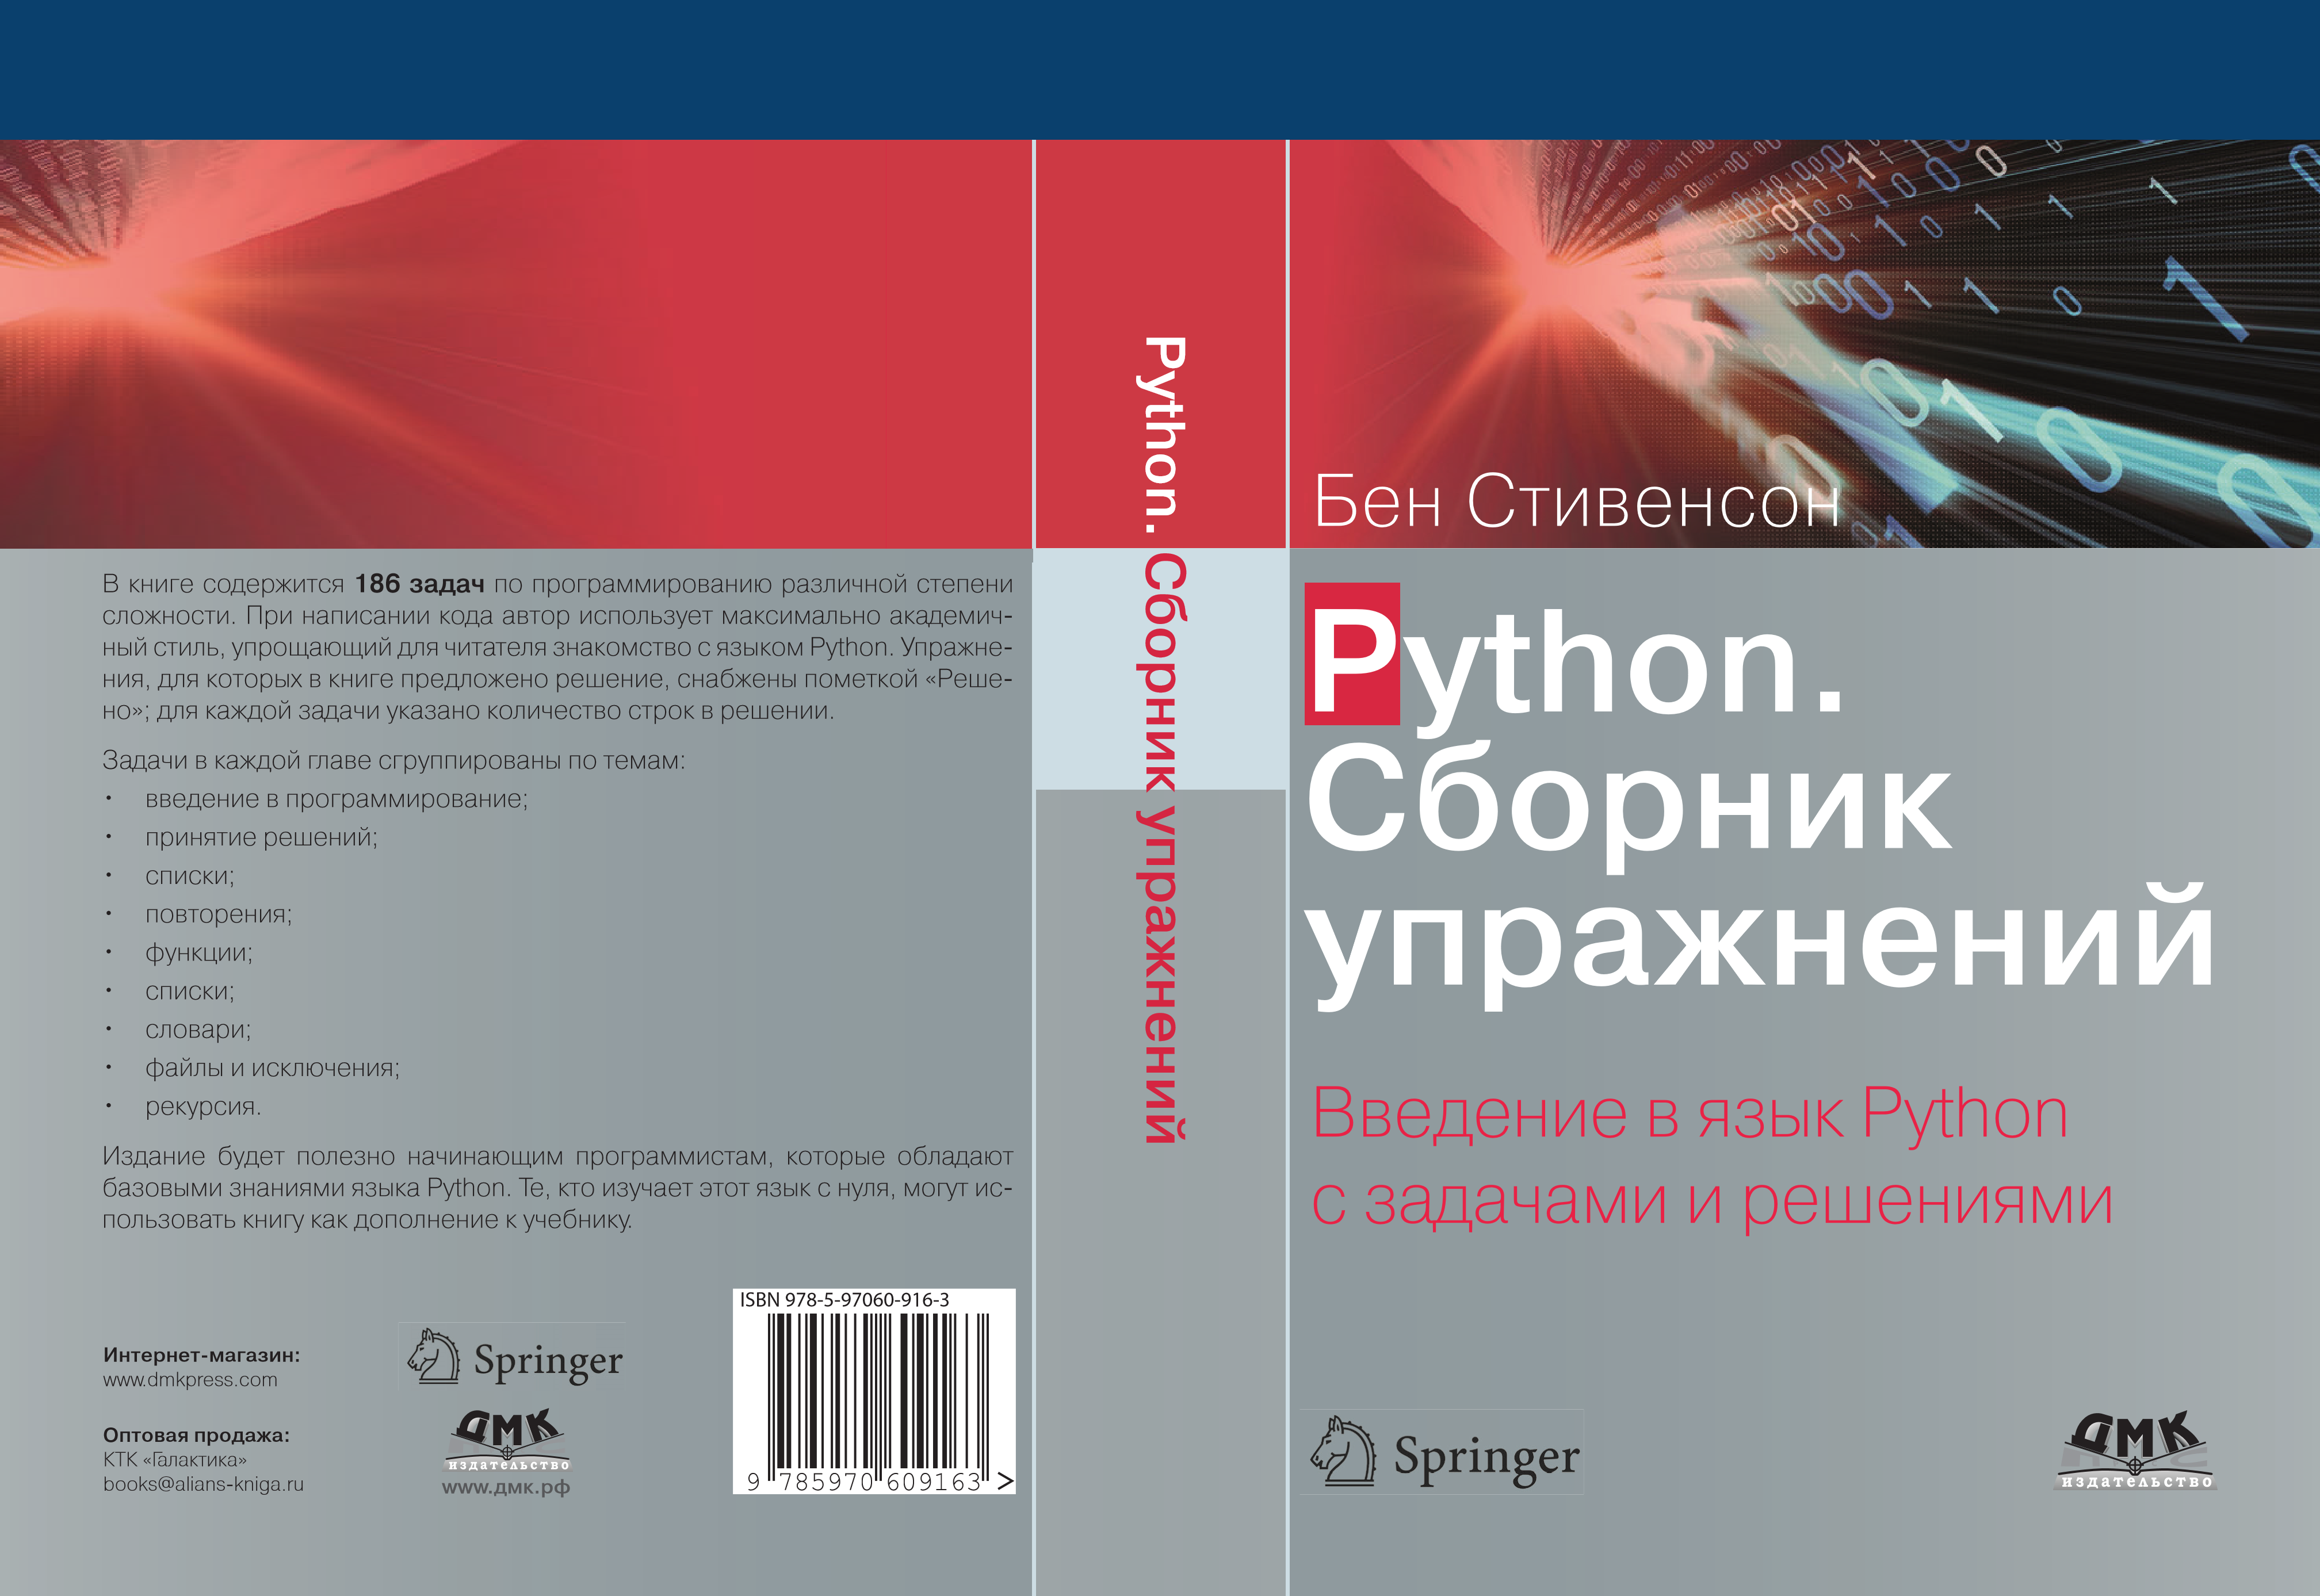 Язык python книги. Бен Стивенсон сборник упражнений. Python. Сборник упражнения. Книга. Введение в язык Python. Язык Python книга.